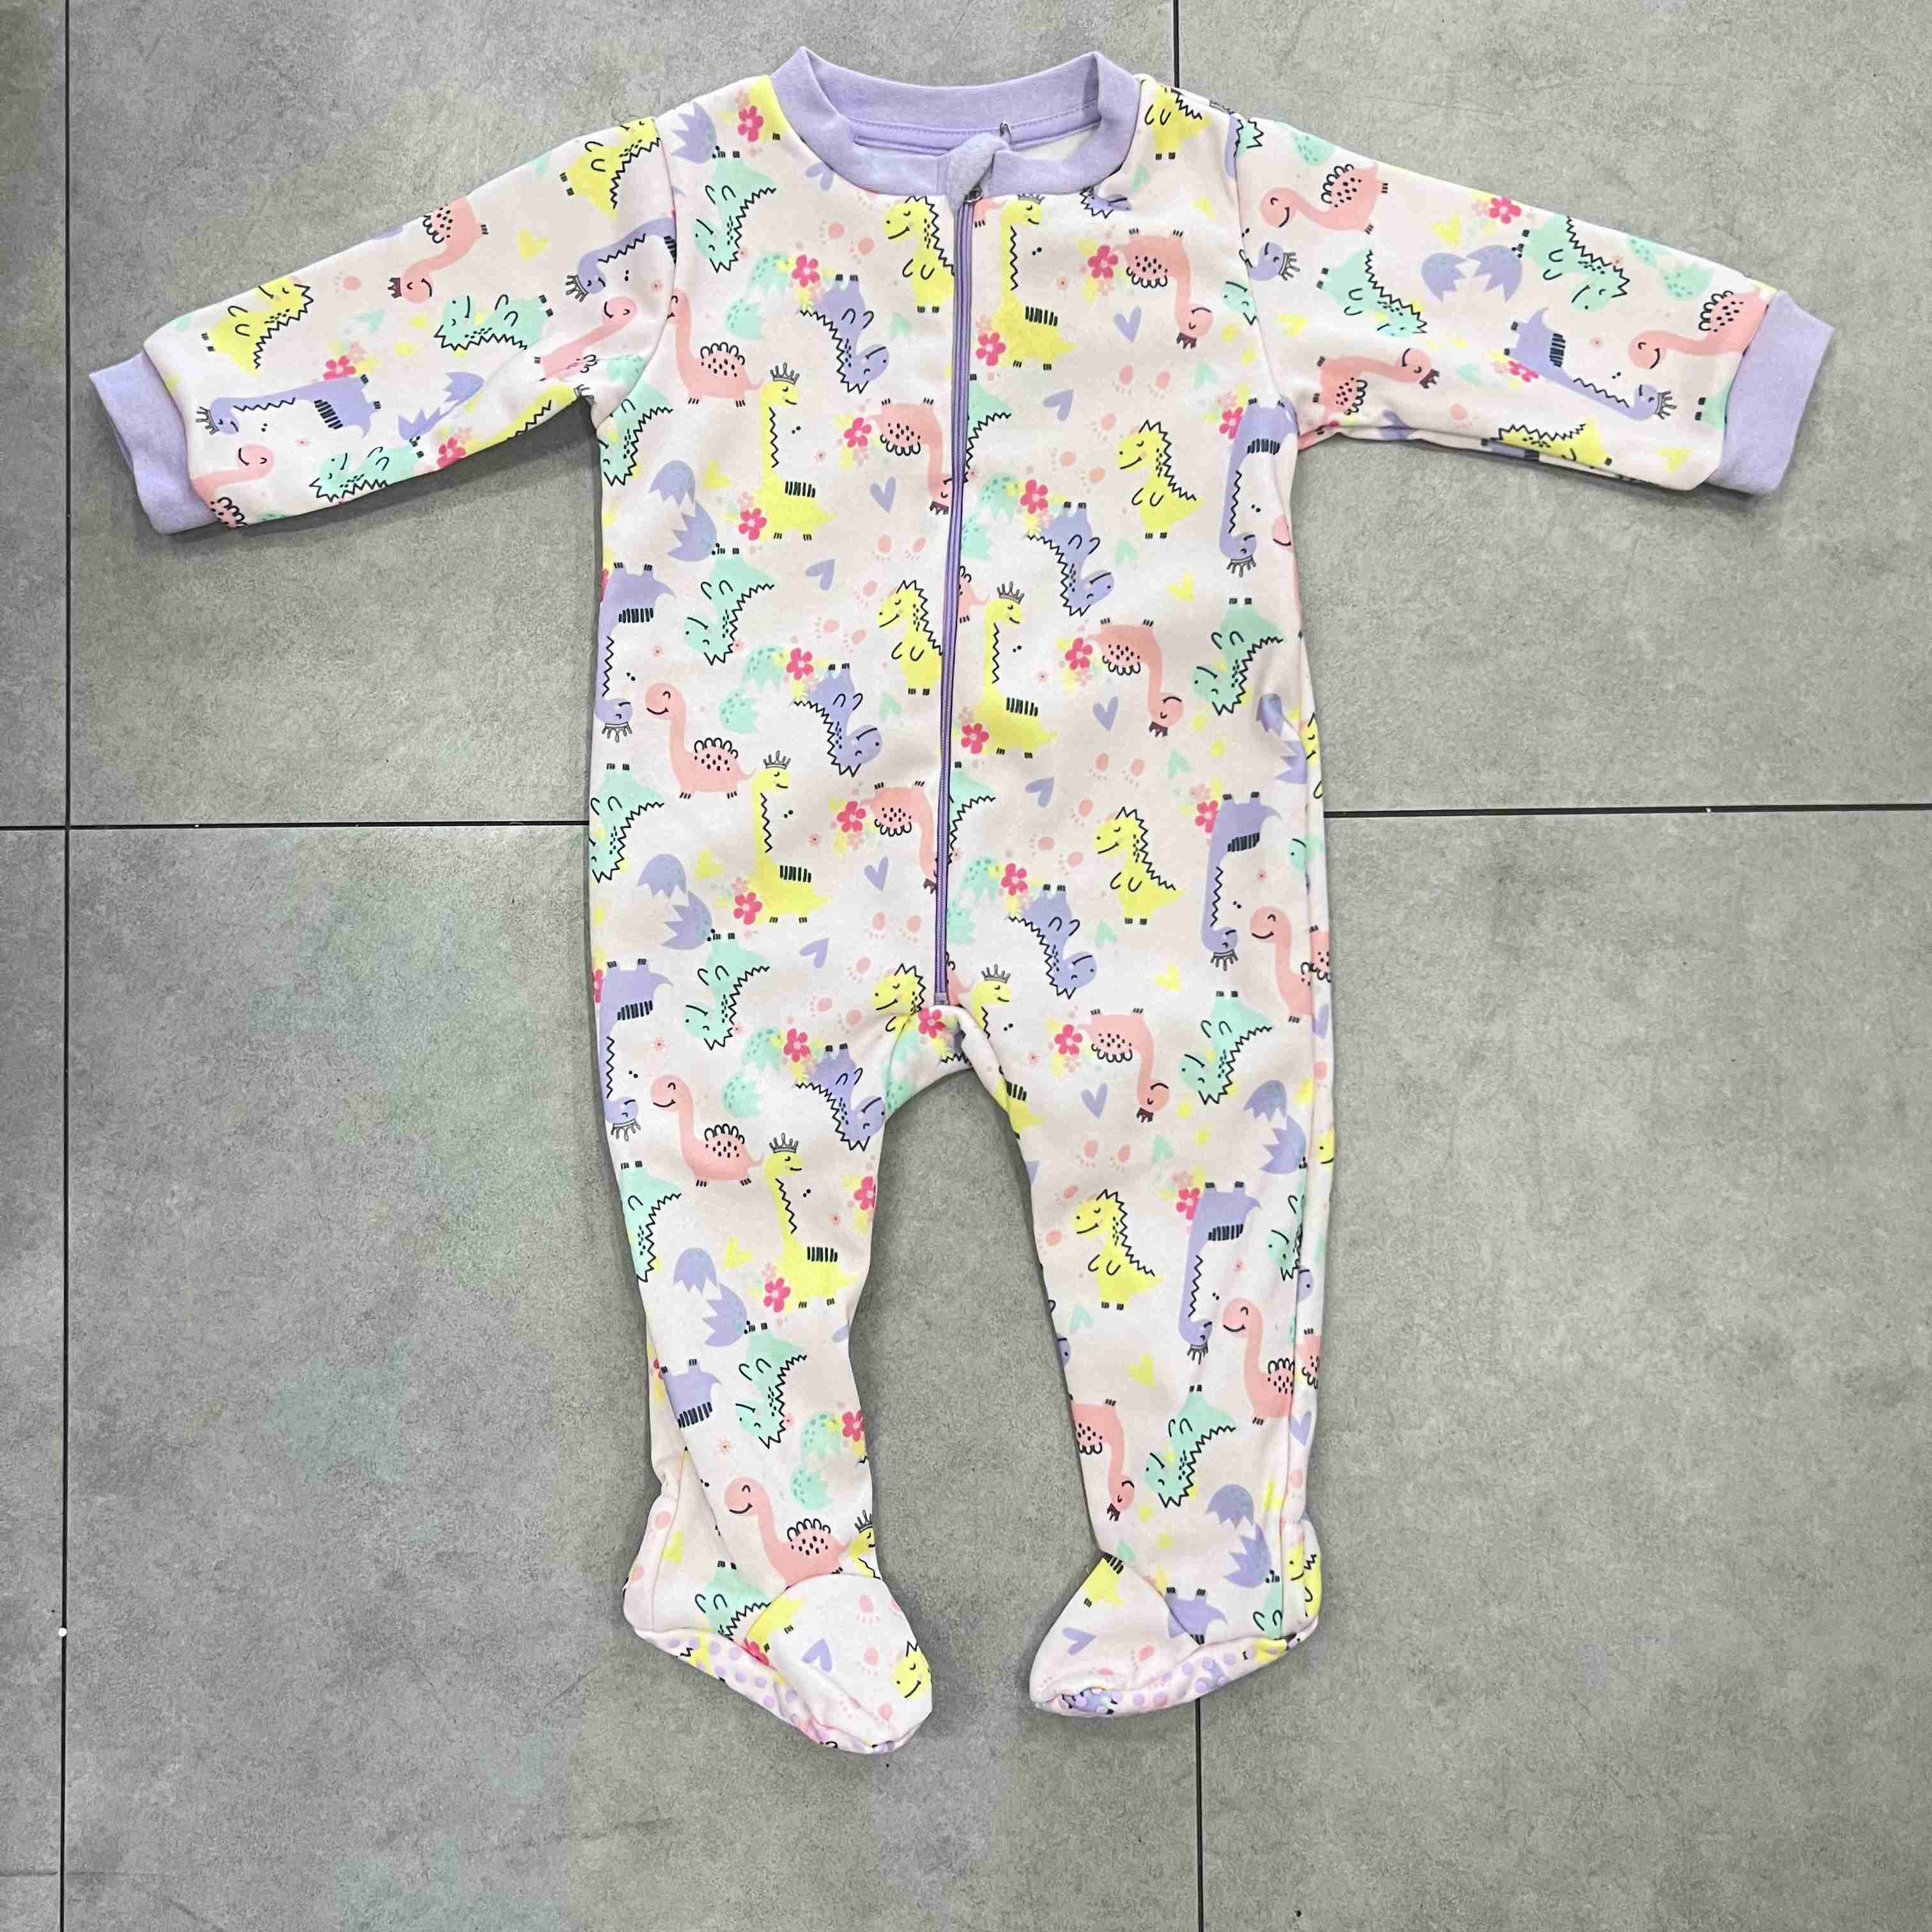 Ready-Made Baby Girl Polar Fleece Pajamas 1 Piece Baby Sleepwear Cartoon AOP with Non-Slip Sole